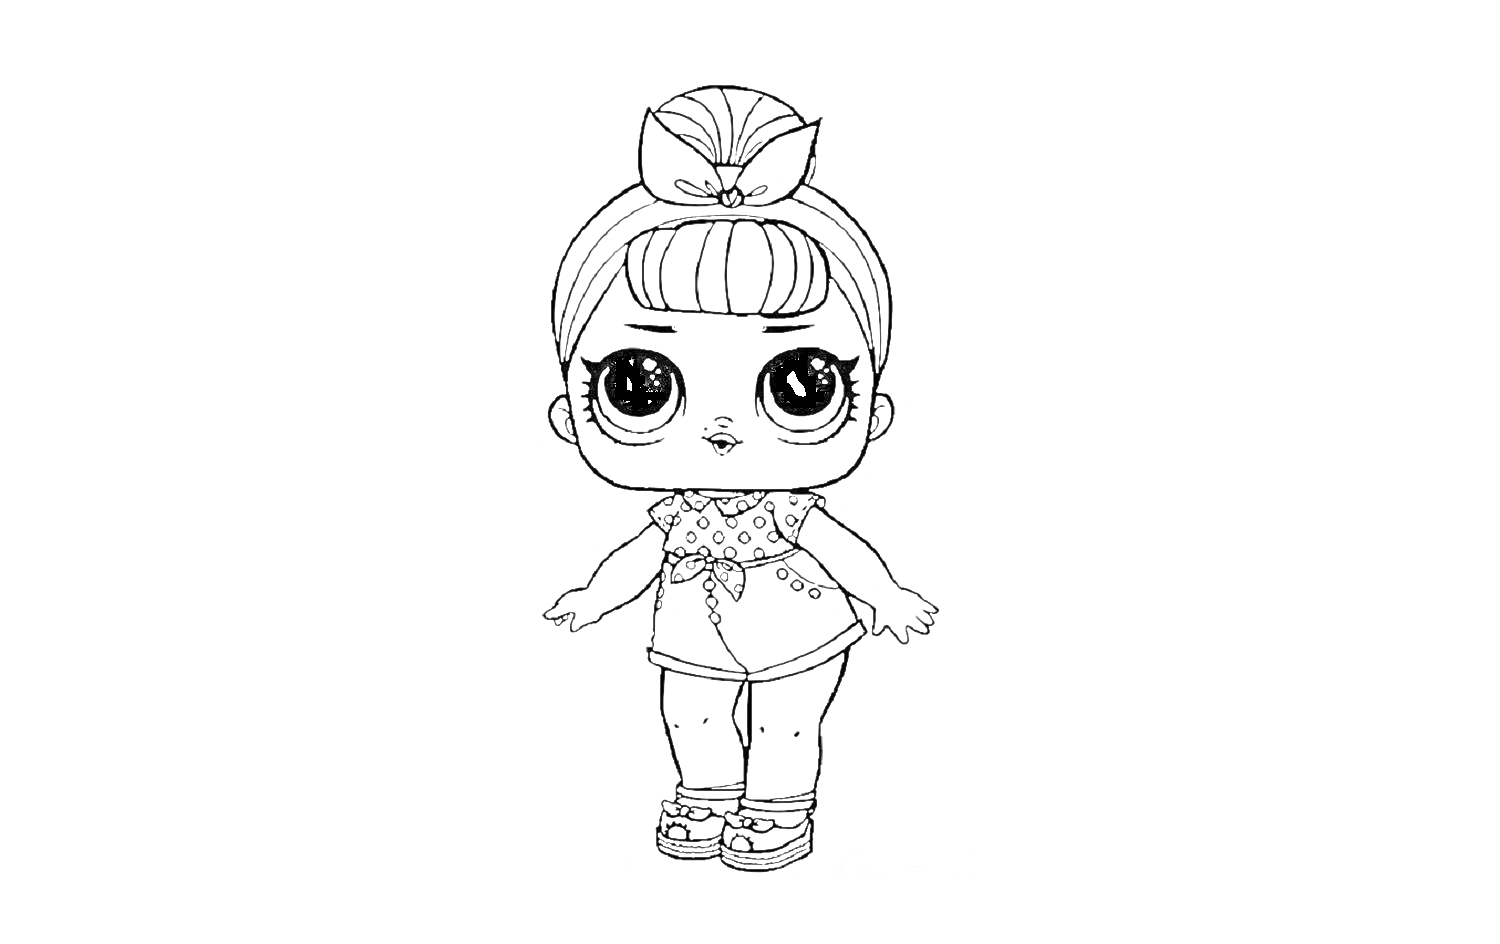 Раскраска Кукла Лол с широкой повязкой на голове, в платье с короткими рукавами и босоножках